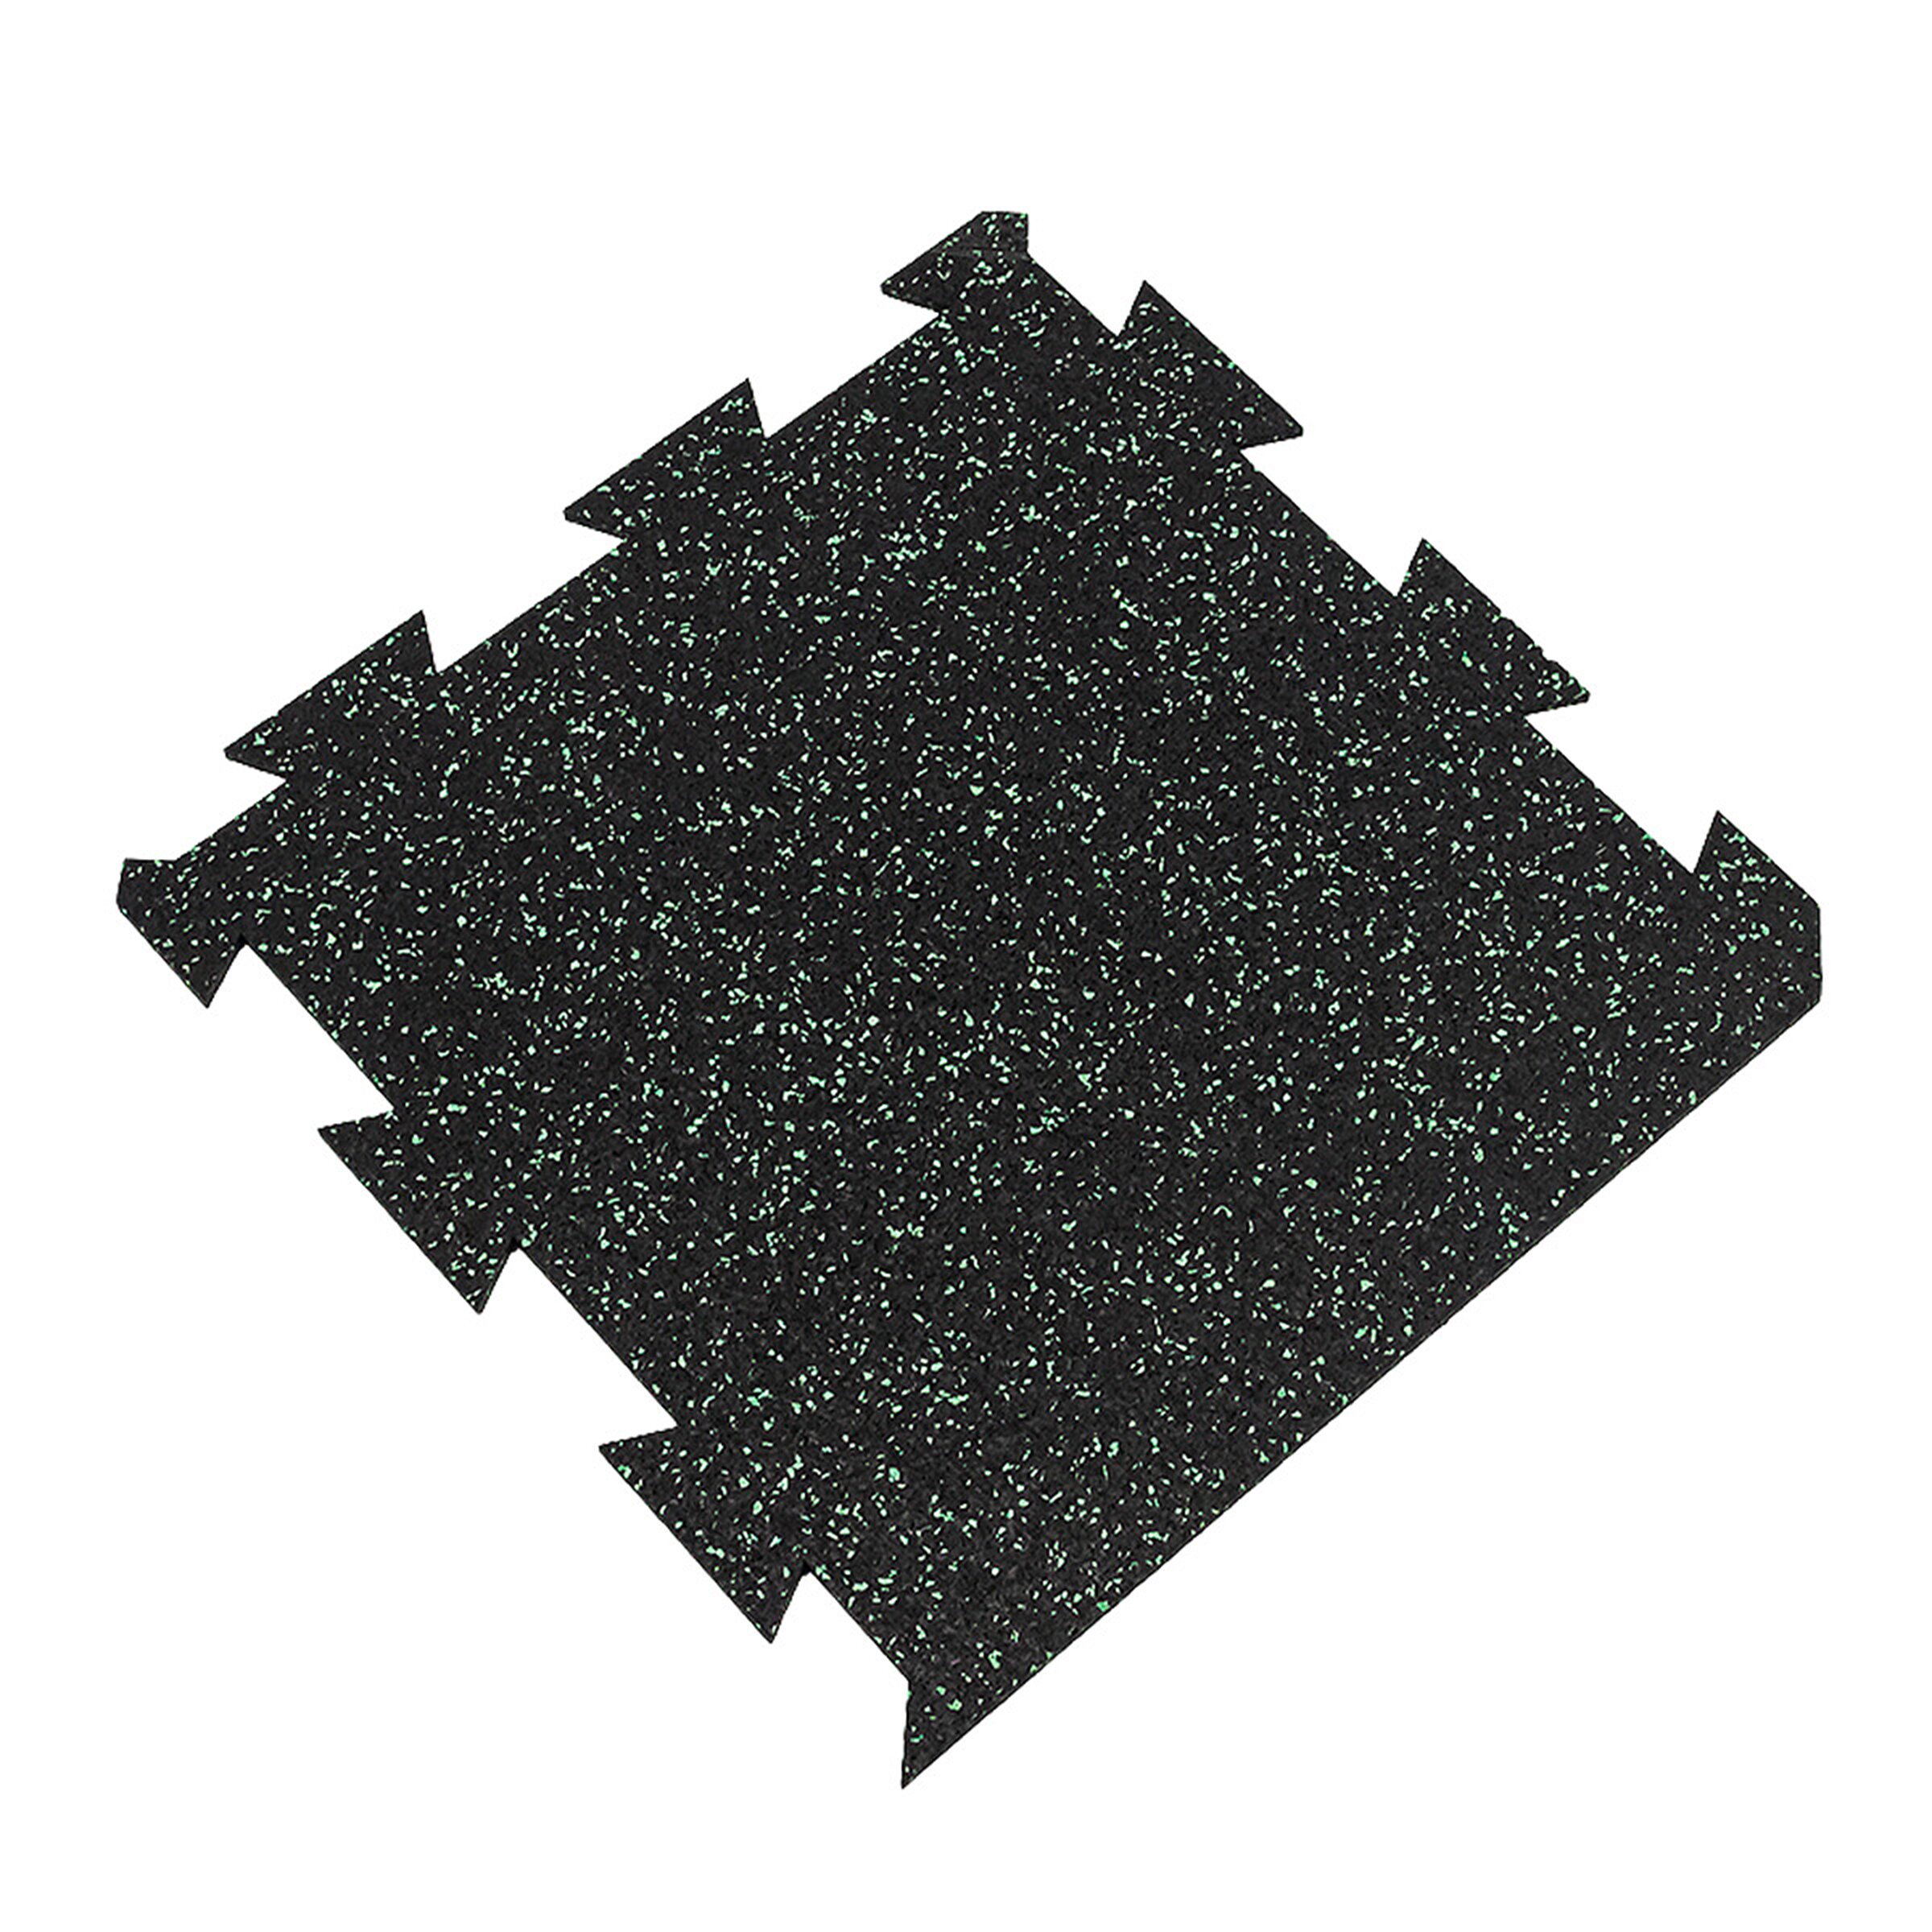 Čierno-zelená gumová modulová puzzle dlažba (okraj) FLOMA FitFlo SF1050 - dĺžka 50 cm, šírka 50 cm, výška 1 cm